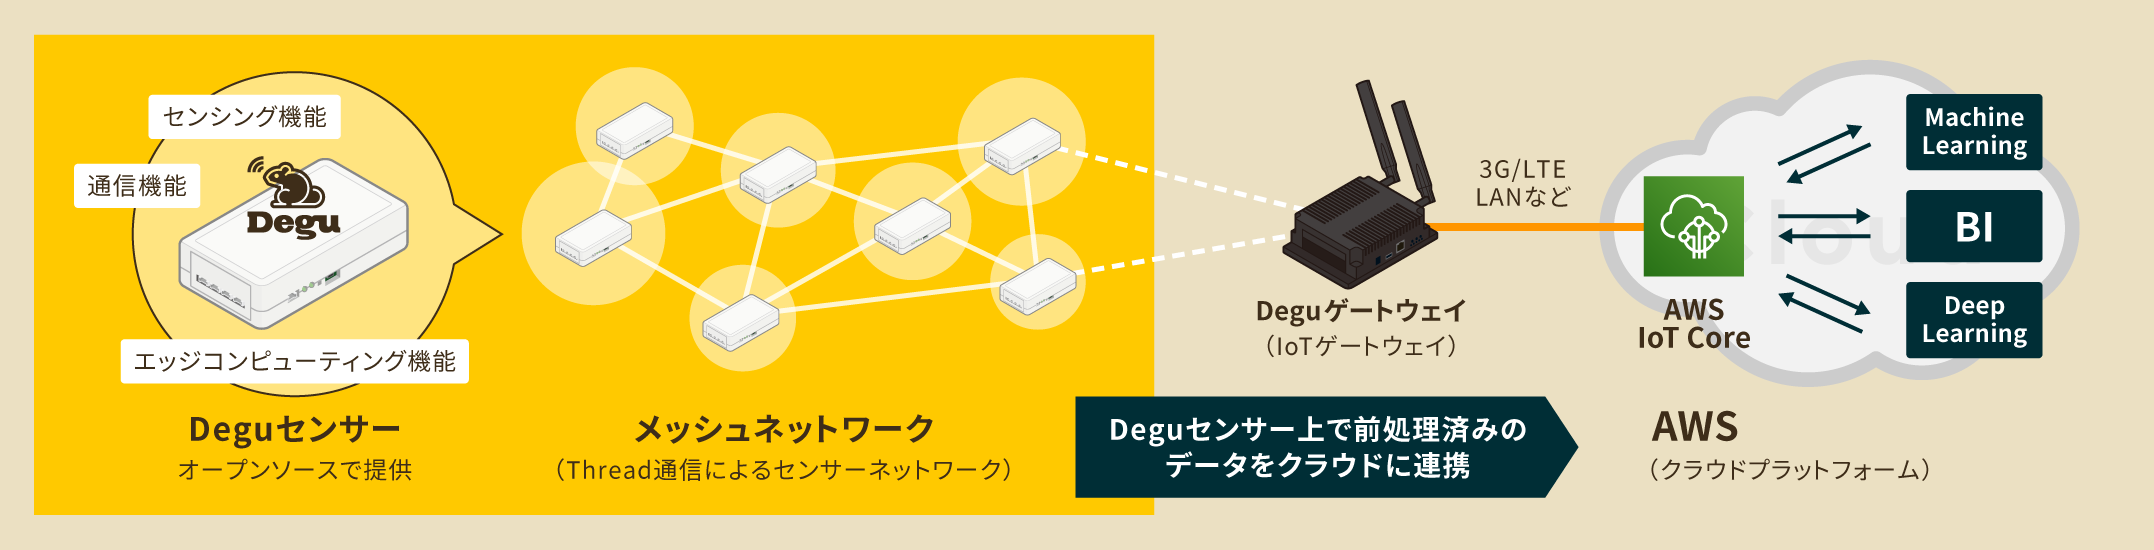 クラスメソッド Awsを活用したiot開発支援においてiotセンサー技術 Degu を採用 クラスメソッド株式会社のプレスリリース